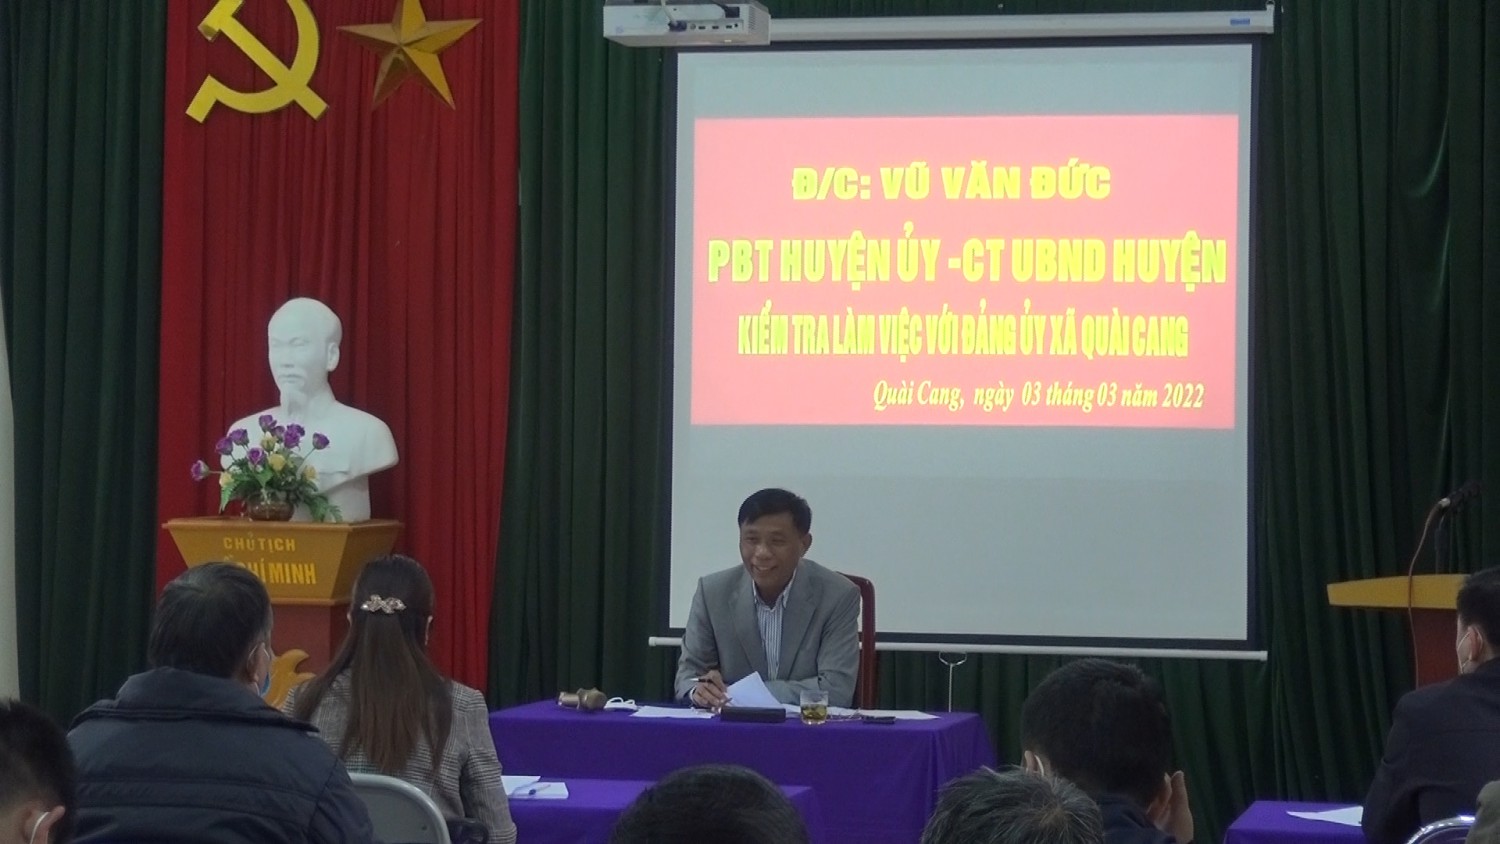 Đồng chí Vũ Văn Đức - Chủ tịch UBND huyện kiểm tra thực hiện nhiệm vụ trước, trong và sau Tết tại hai xã Quài Cang, Rạng Đông